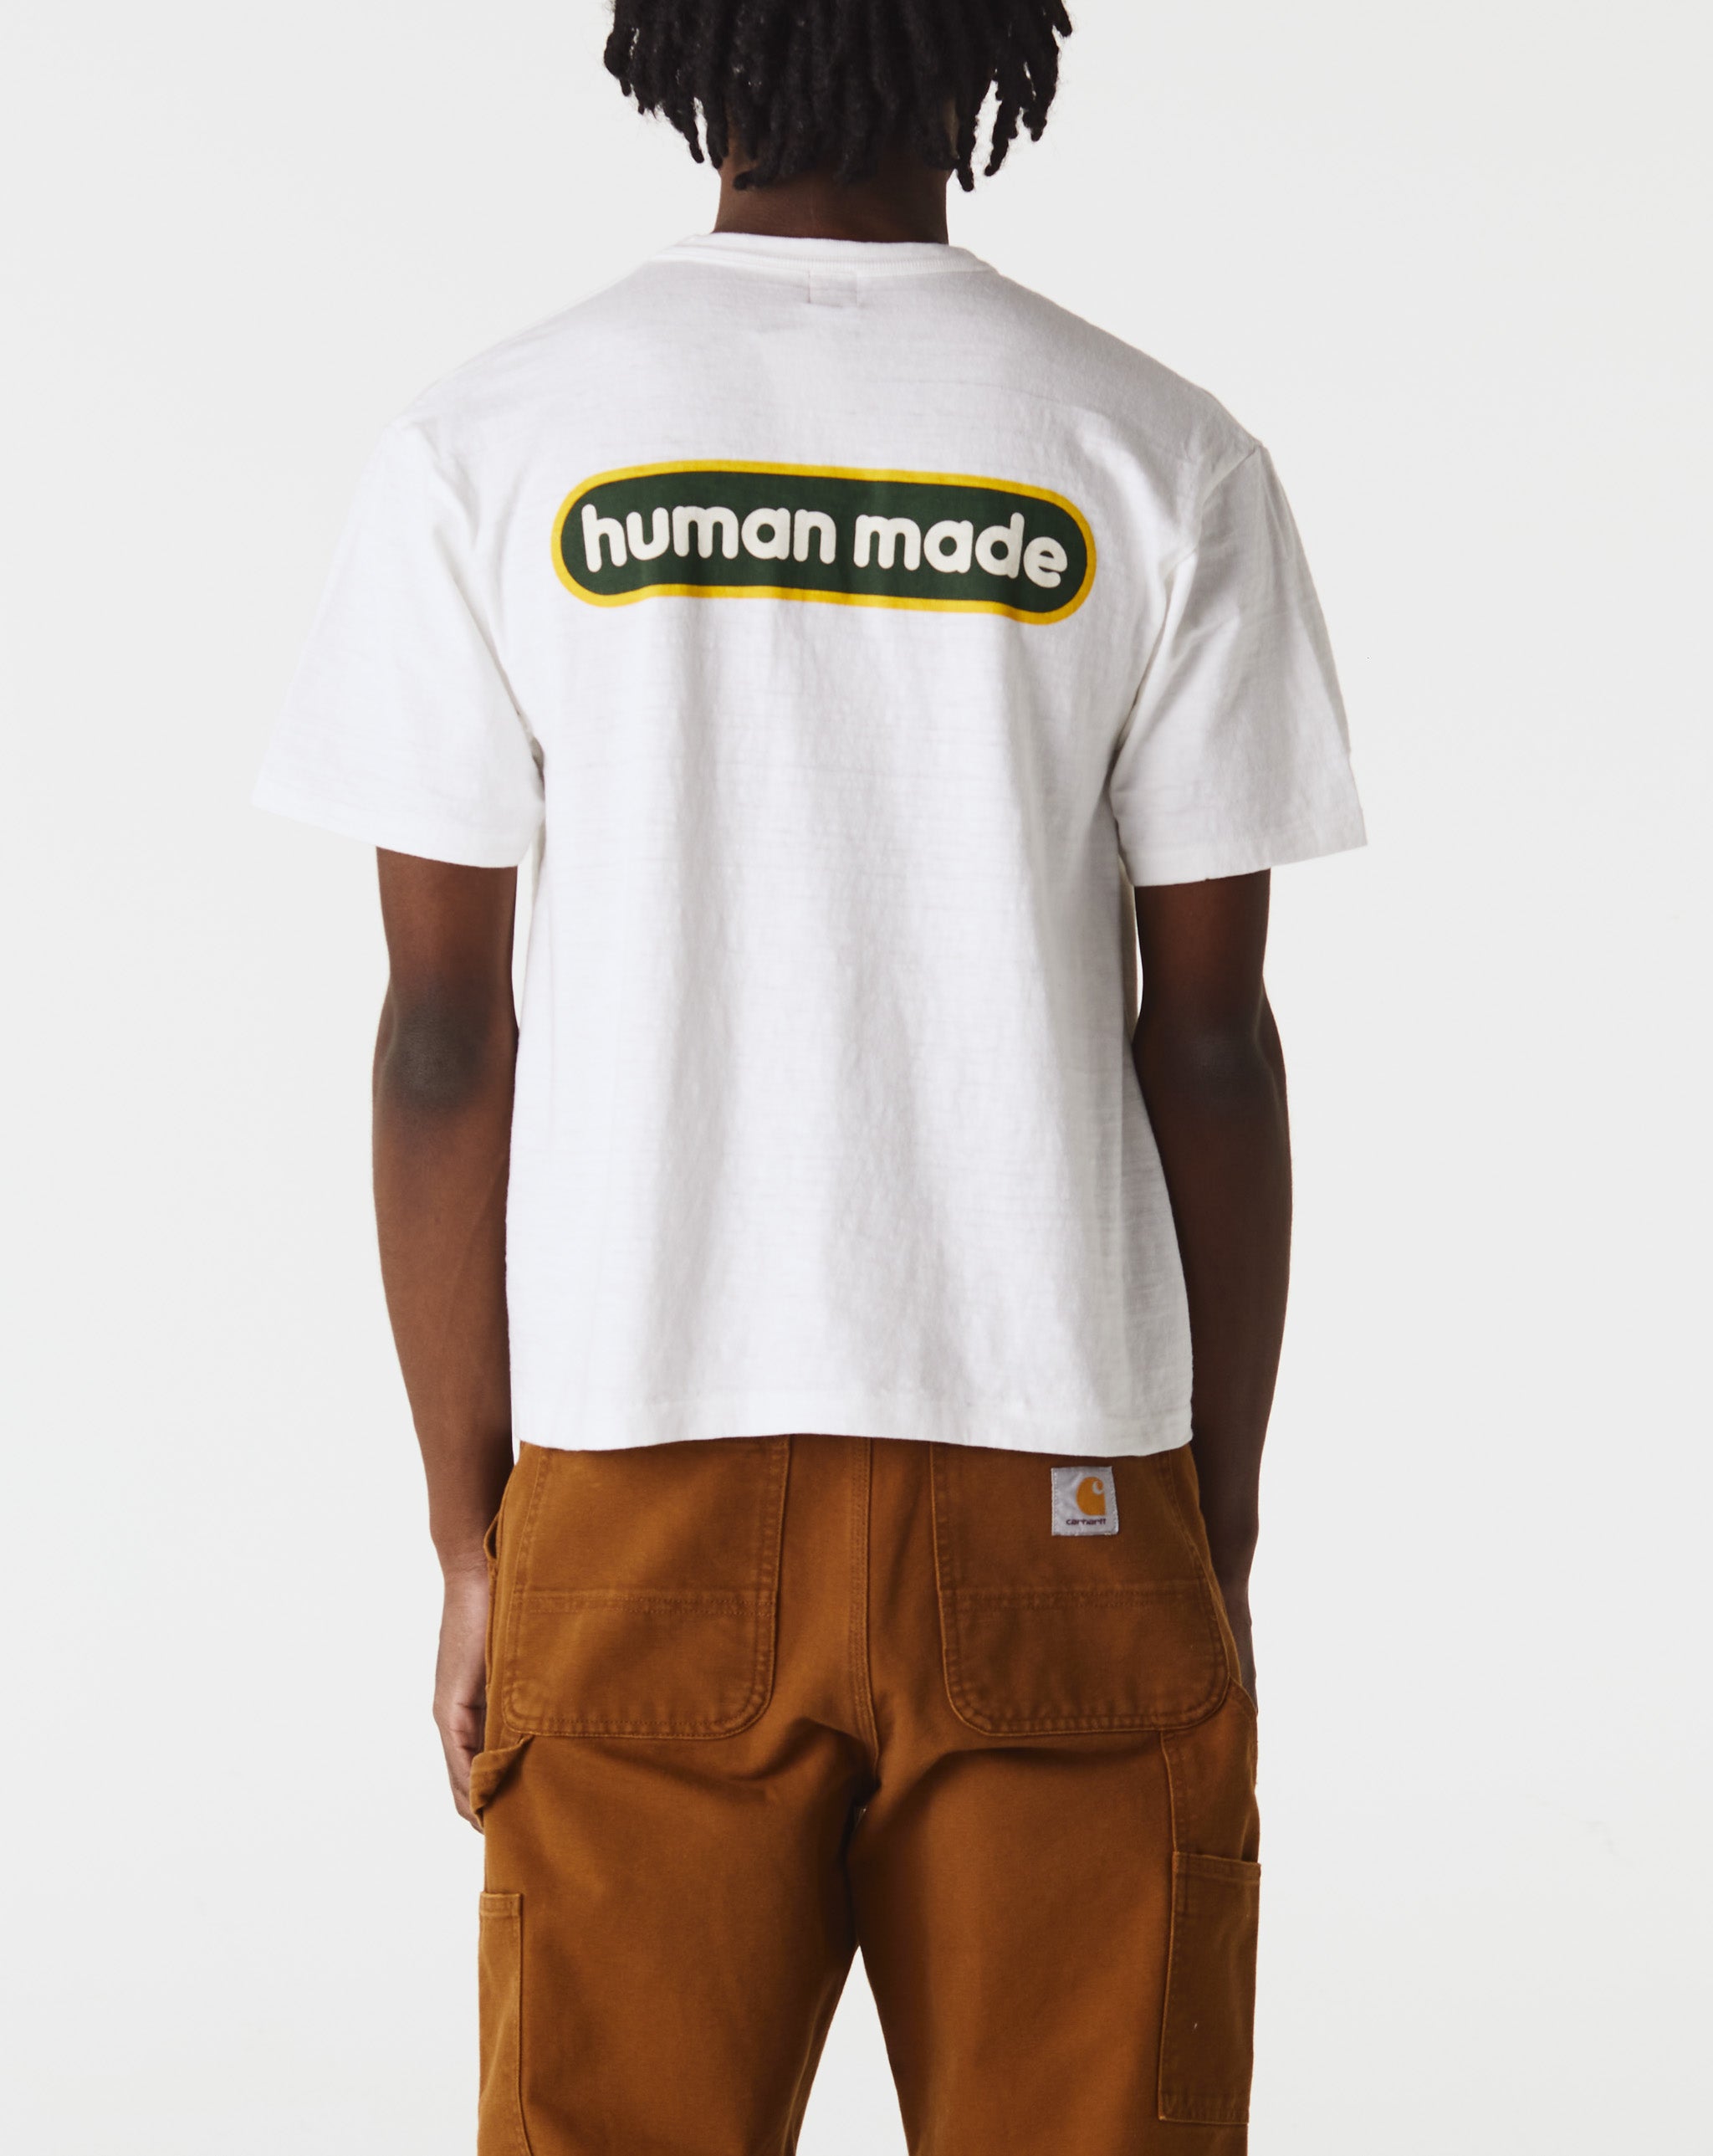 Human Made Graphic T-Shirt #08  - Cheap Urlfreeze Jordan outlet